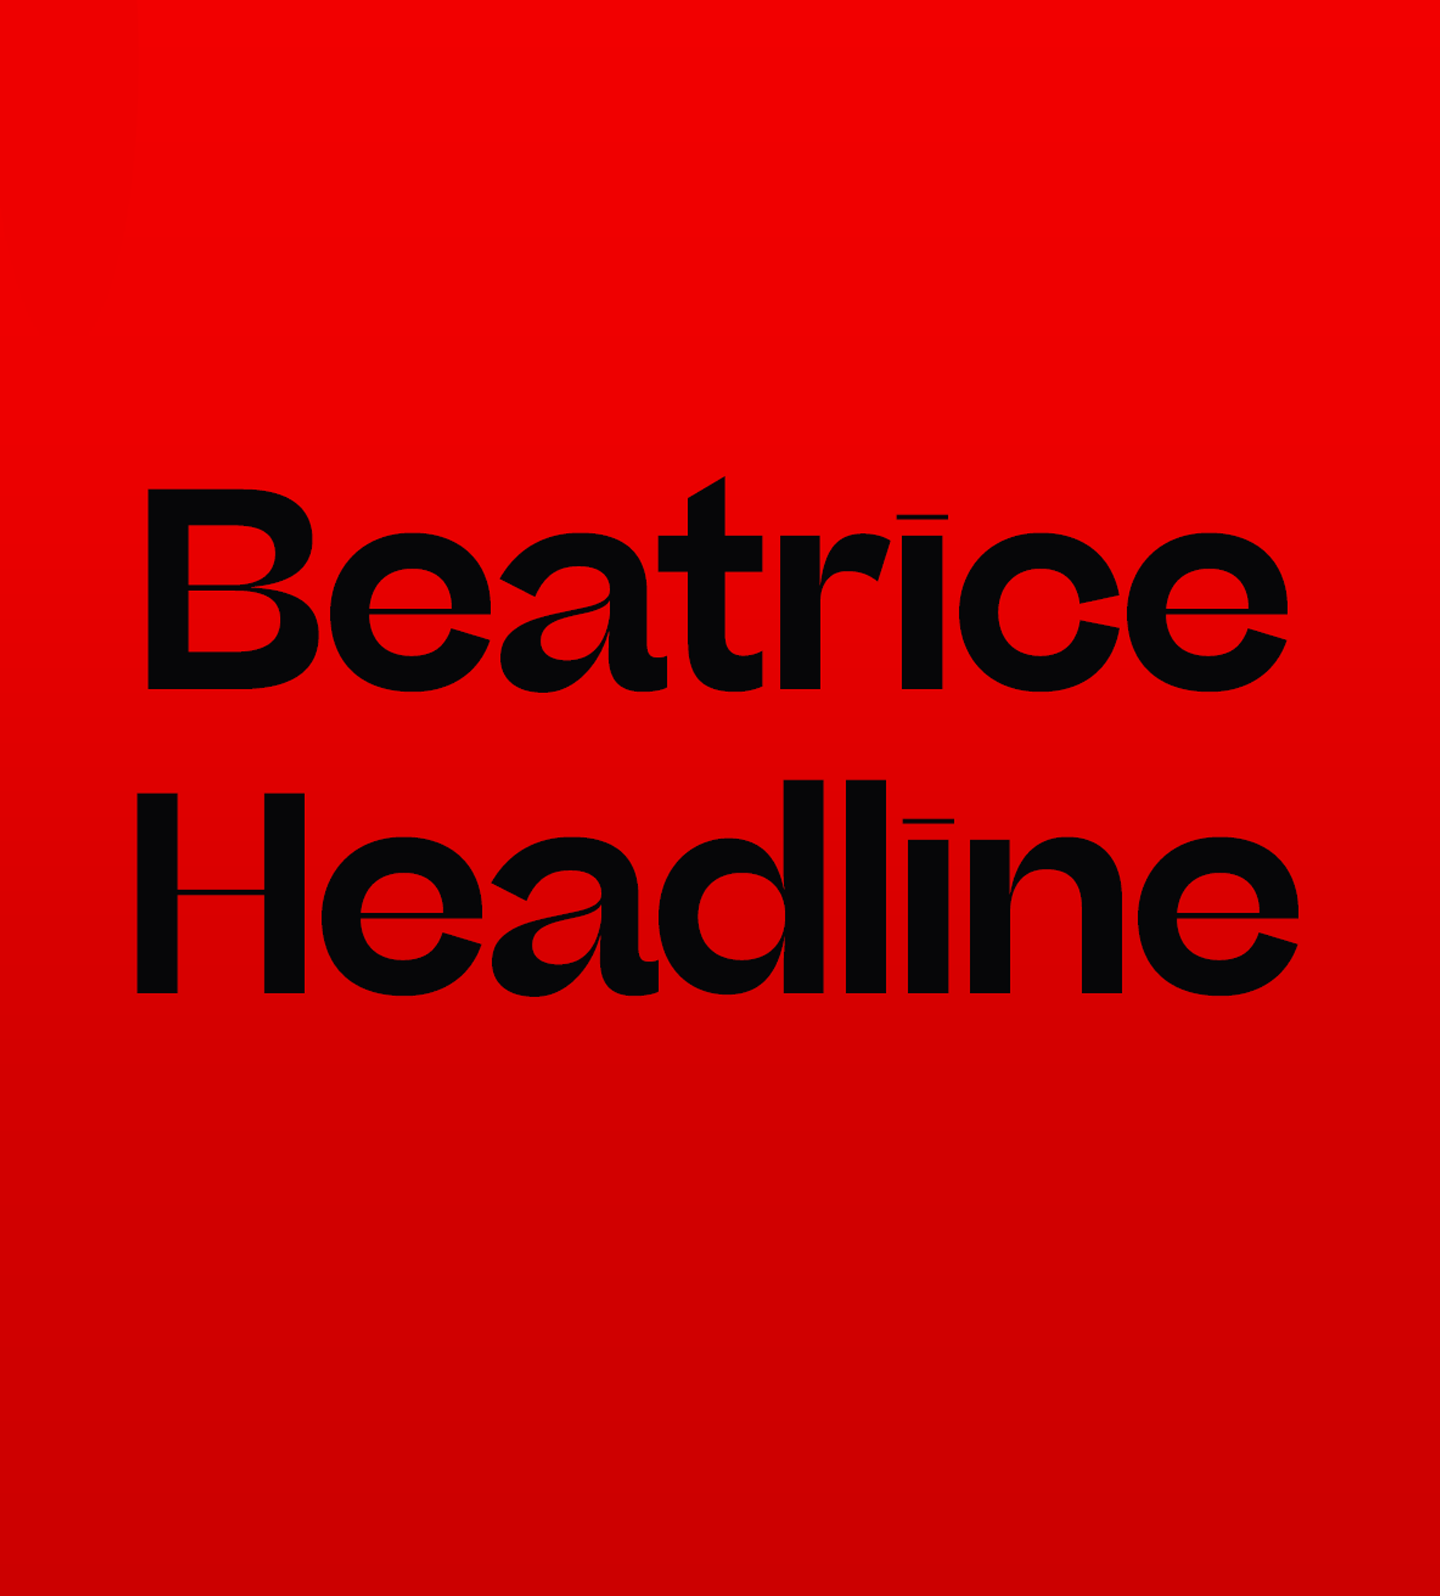 Пример шрифта Beatrice Headline Semibold